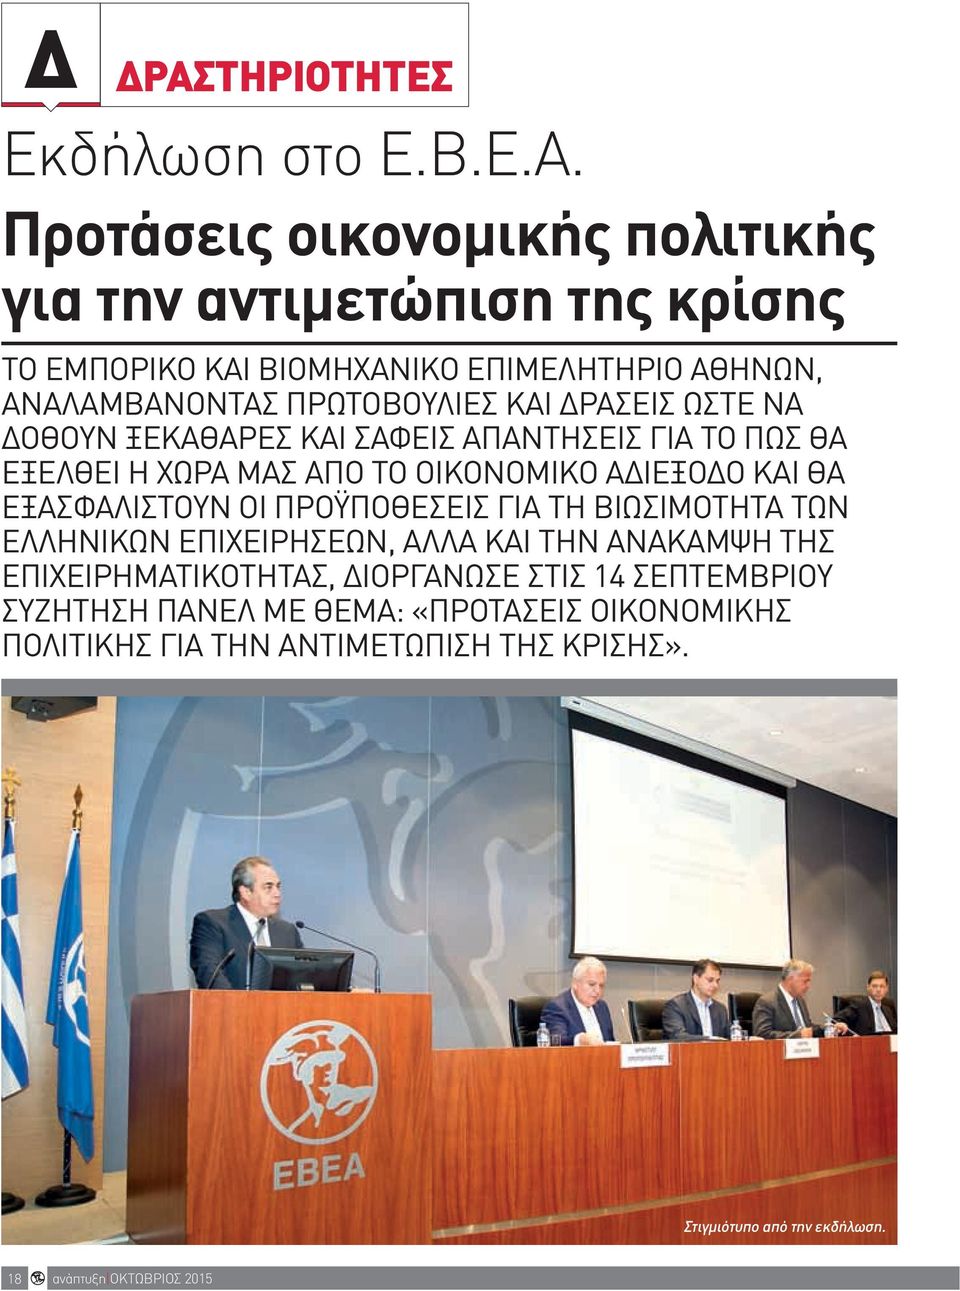 Προτάσεις οικονομικής πολιτικής για την αντιμετώπιση της κρίσης Το Εμπορικο και Βιομηχανικο ΕπιμΕληΤηριο αθηνών, αναλαμβανοντας πρώτοβουλιες και